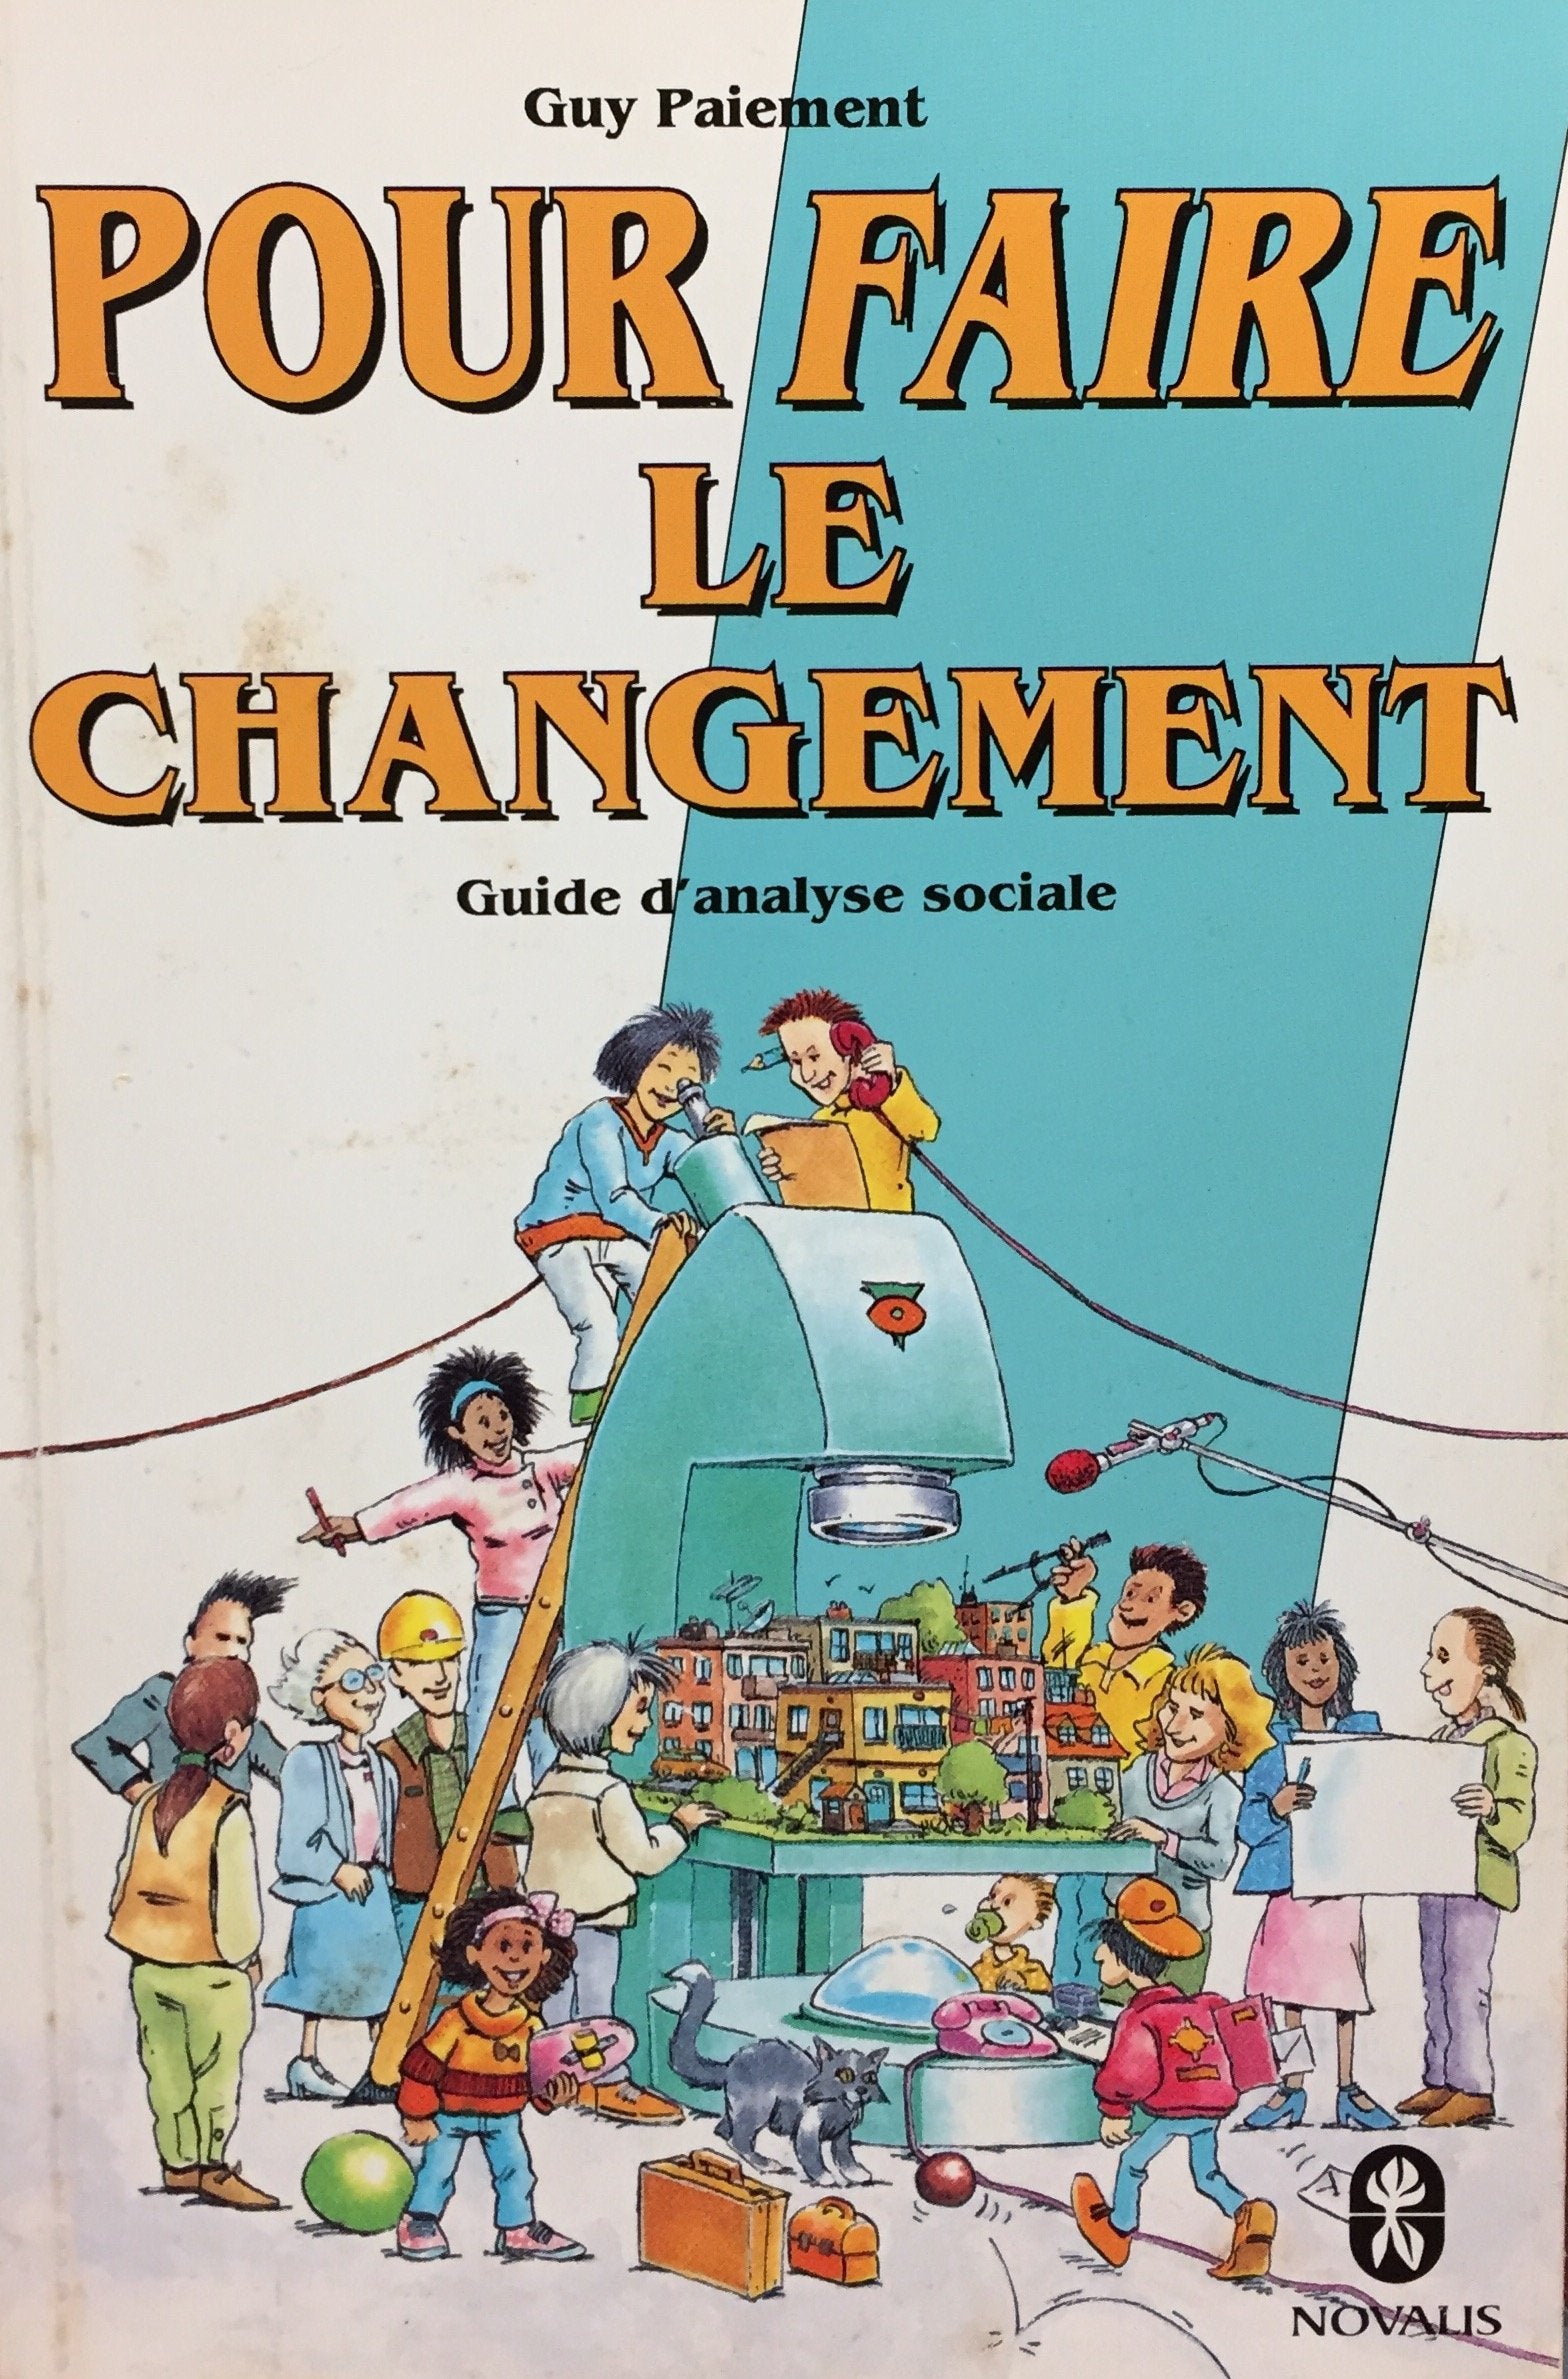 Livre ISBN 2890884422 Pour faire le changement : guide d'analyse sociale (Guy Paiement)